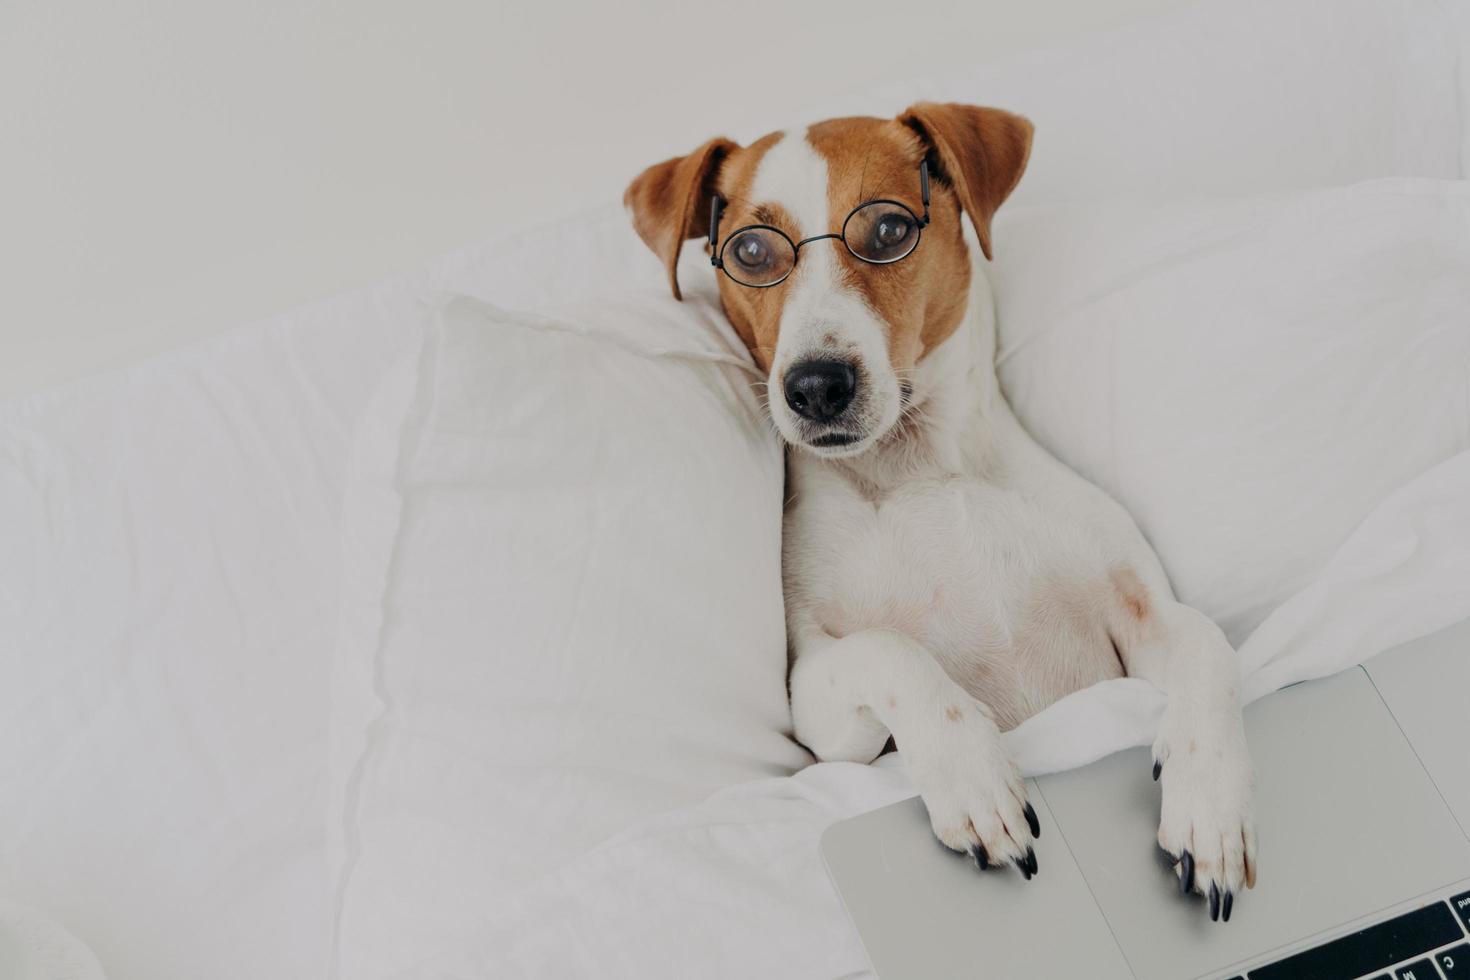 détendu, intelligent, le chien jack russel terrier porte des lunettes transparentes, travaille avec un ordinateur portable, reste dans la chambre, utilise Internet sans fil à la maison, a un look intelligent. notion d'animaux domestiques photo